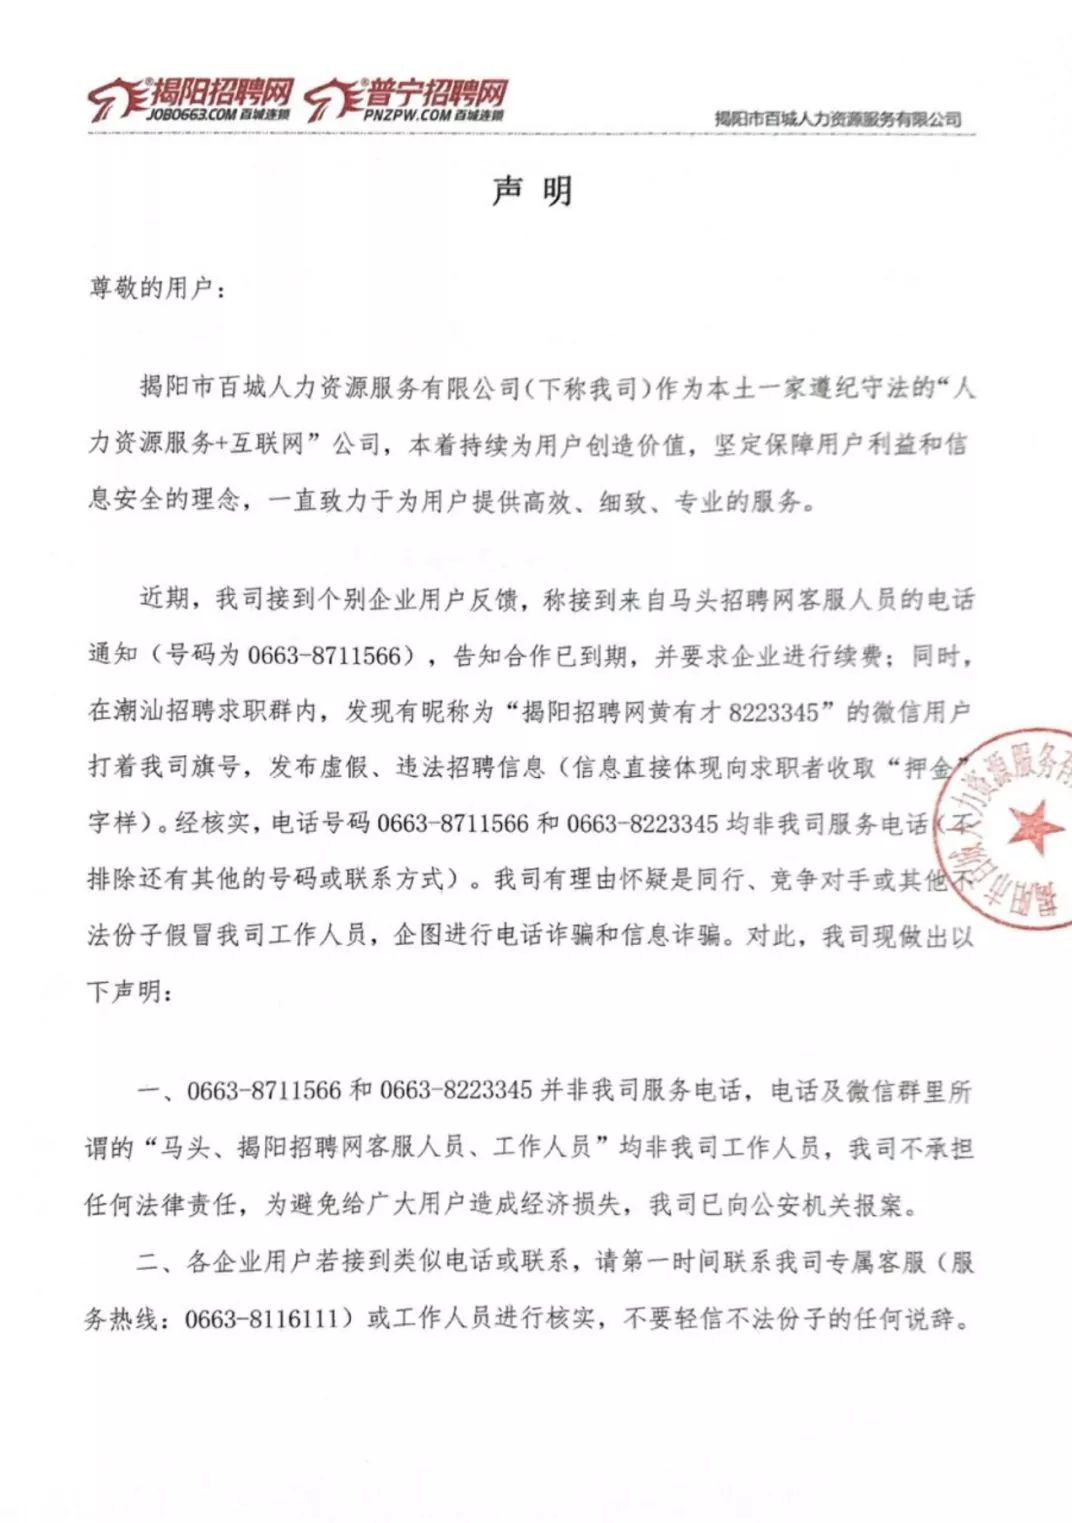 马头招聘网_2016年广东省公务员报名18日开始,揭阳共招录723名